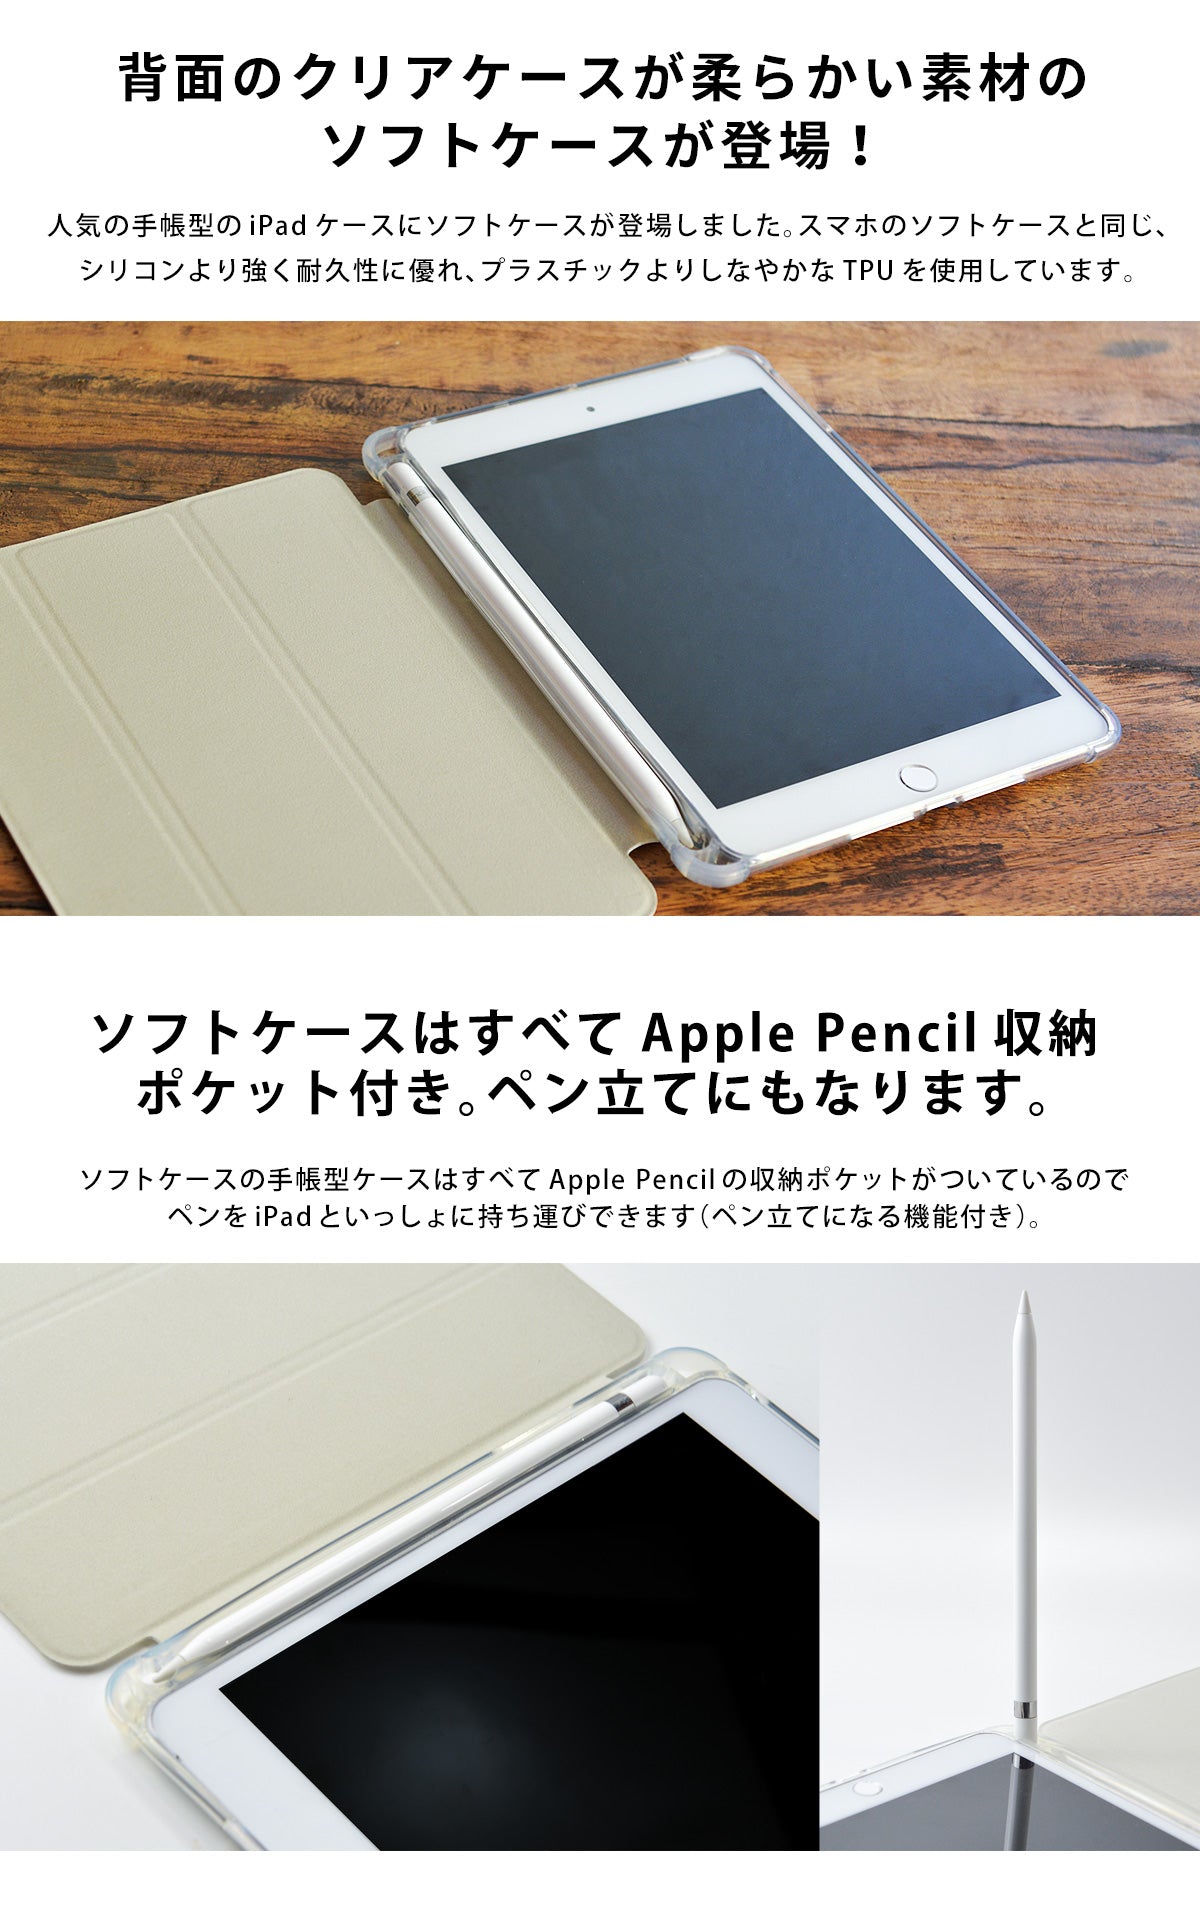 iPad手帳型ケースにソフトケースが登場！iPadソフトケースはApple Pencil収納ポケット付き